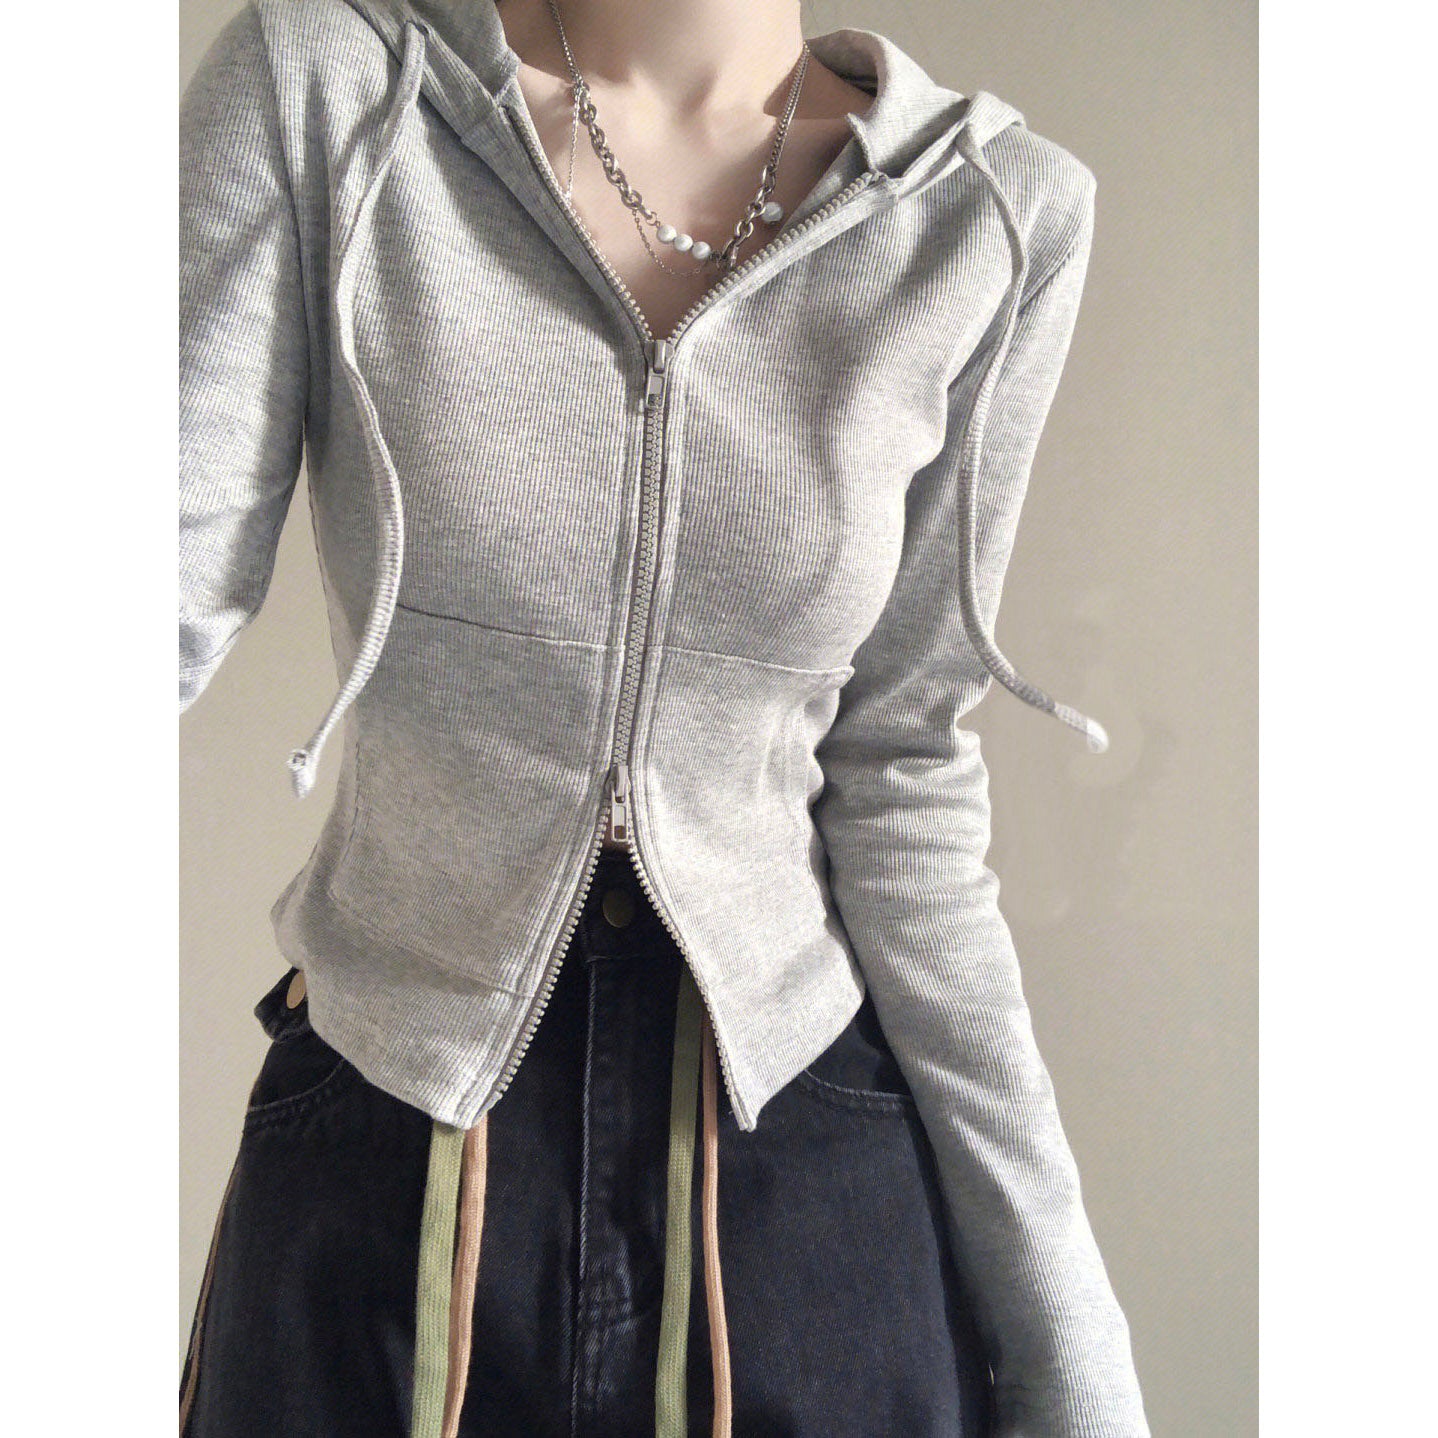 Spring Slim-Fitting Long-Sleeved Hoodie Short Top Women's Casual Niche Design Zipper Cardigan Hoodie Jacket